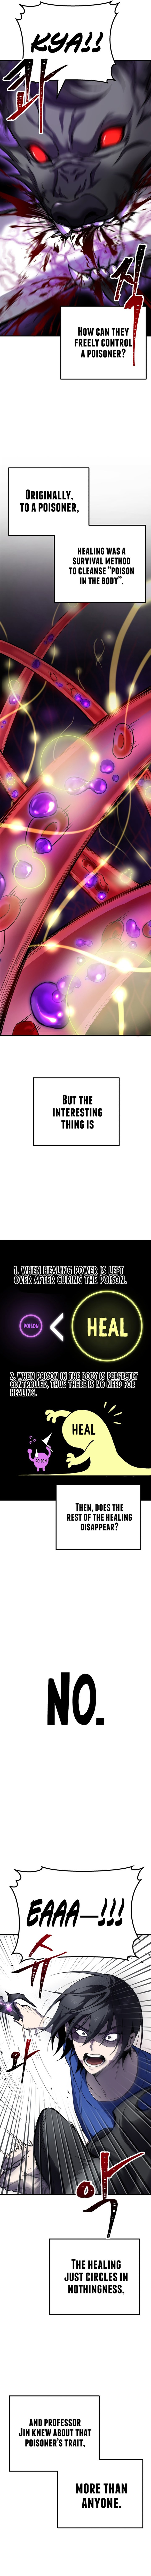 poison_eating_healer_9_15